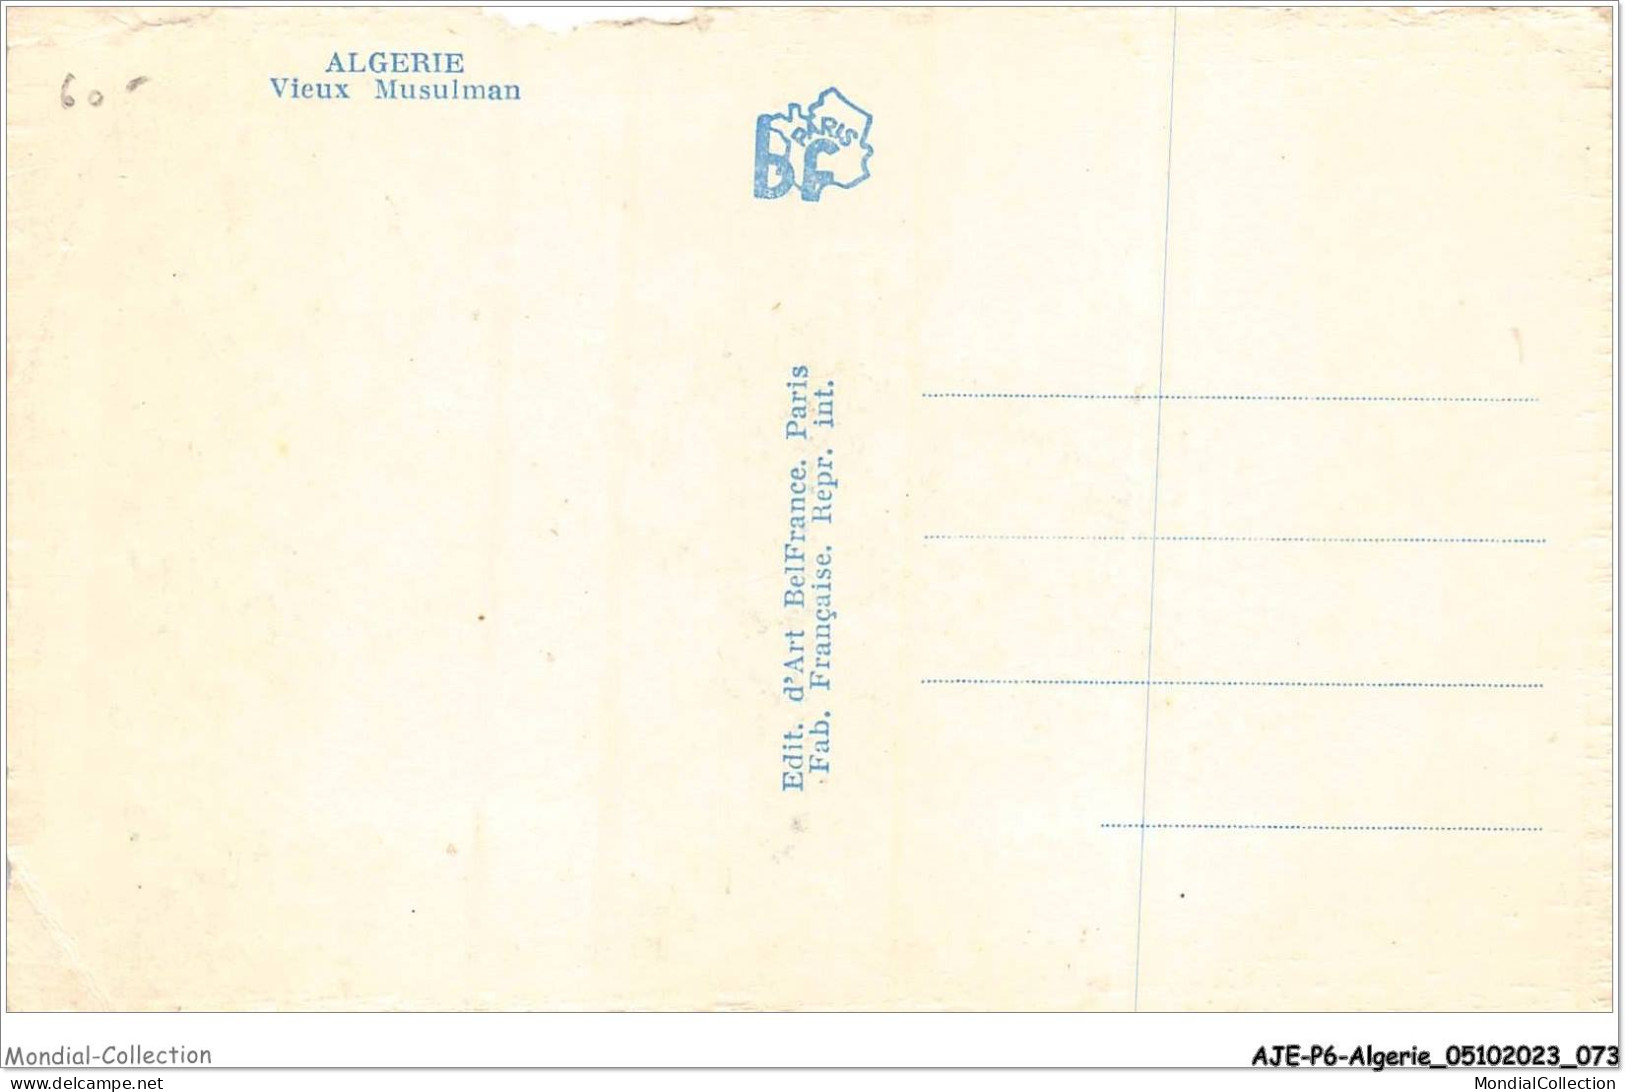 AJEP6-ALGERIE-0543 - ALGERIE - Vieux Musulman - Mannen